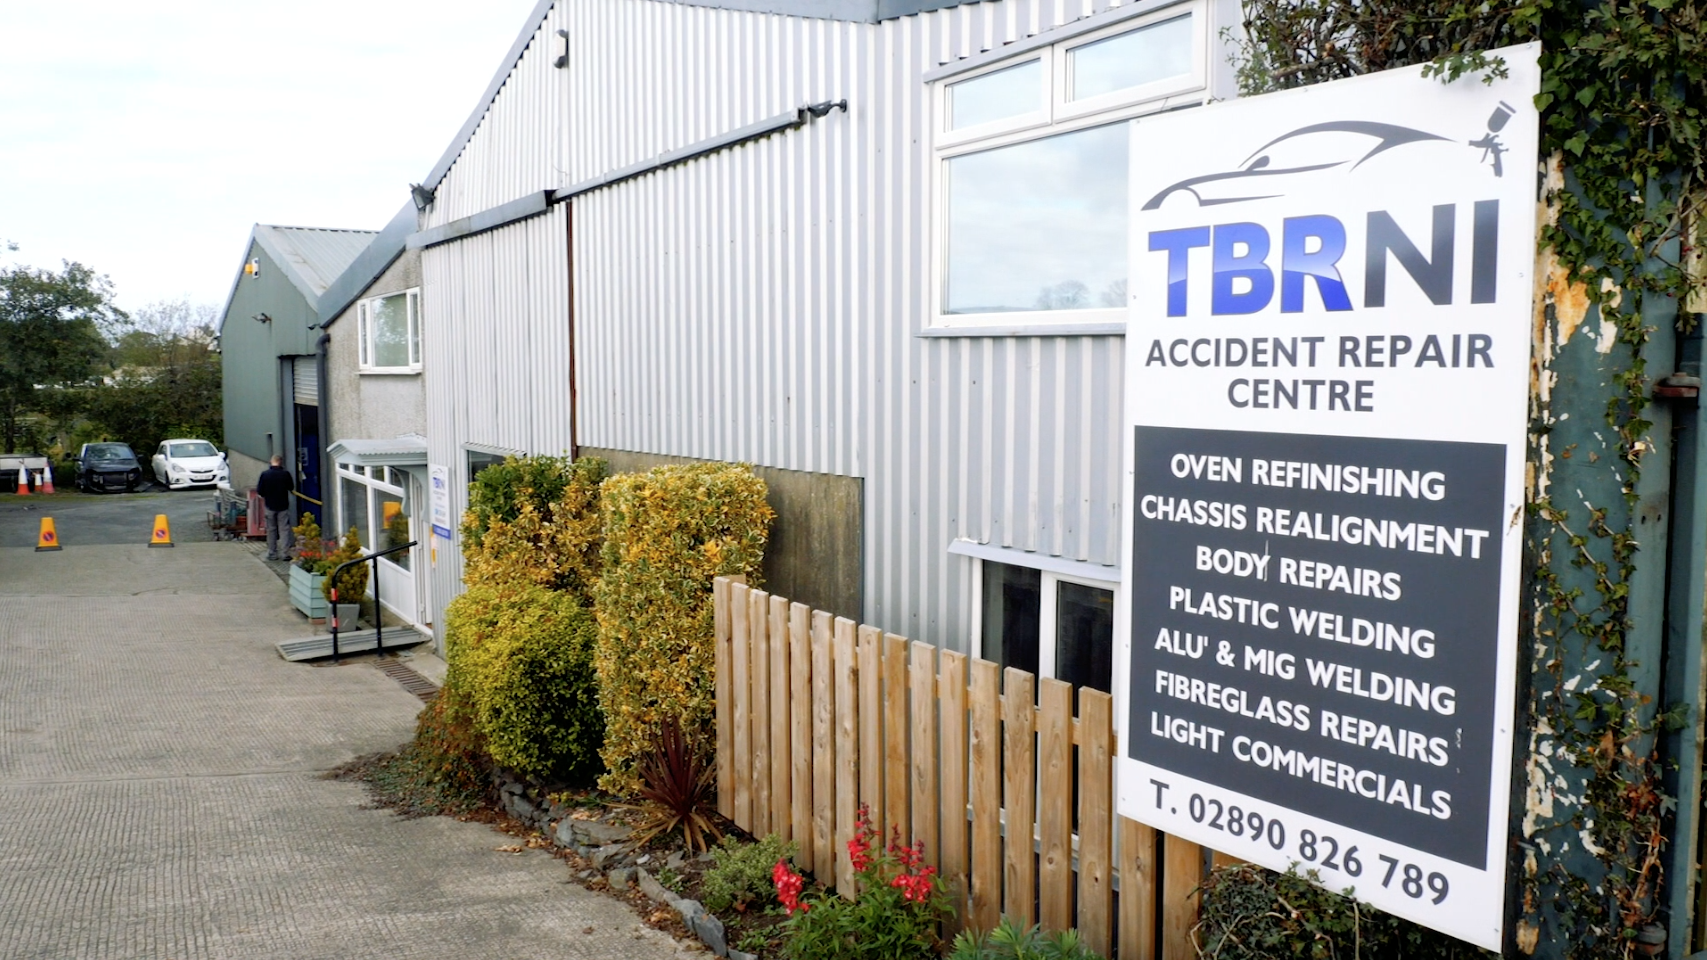 TBR Accident repair centre